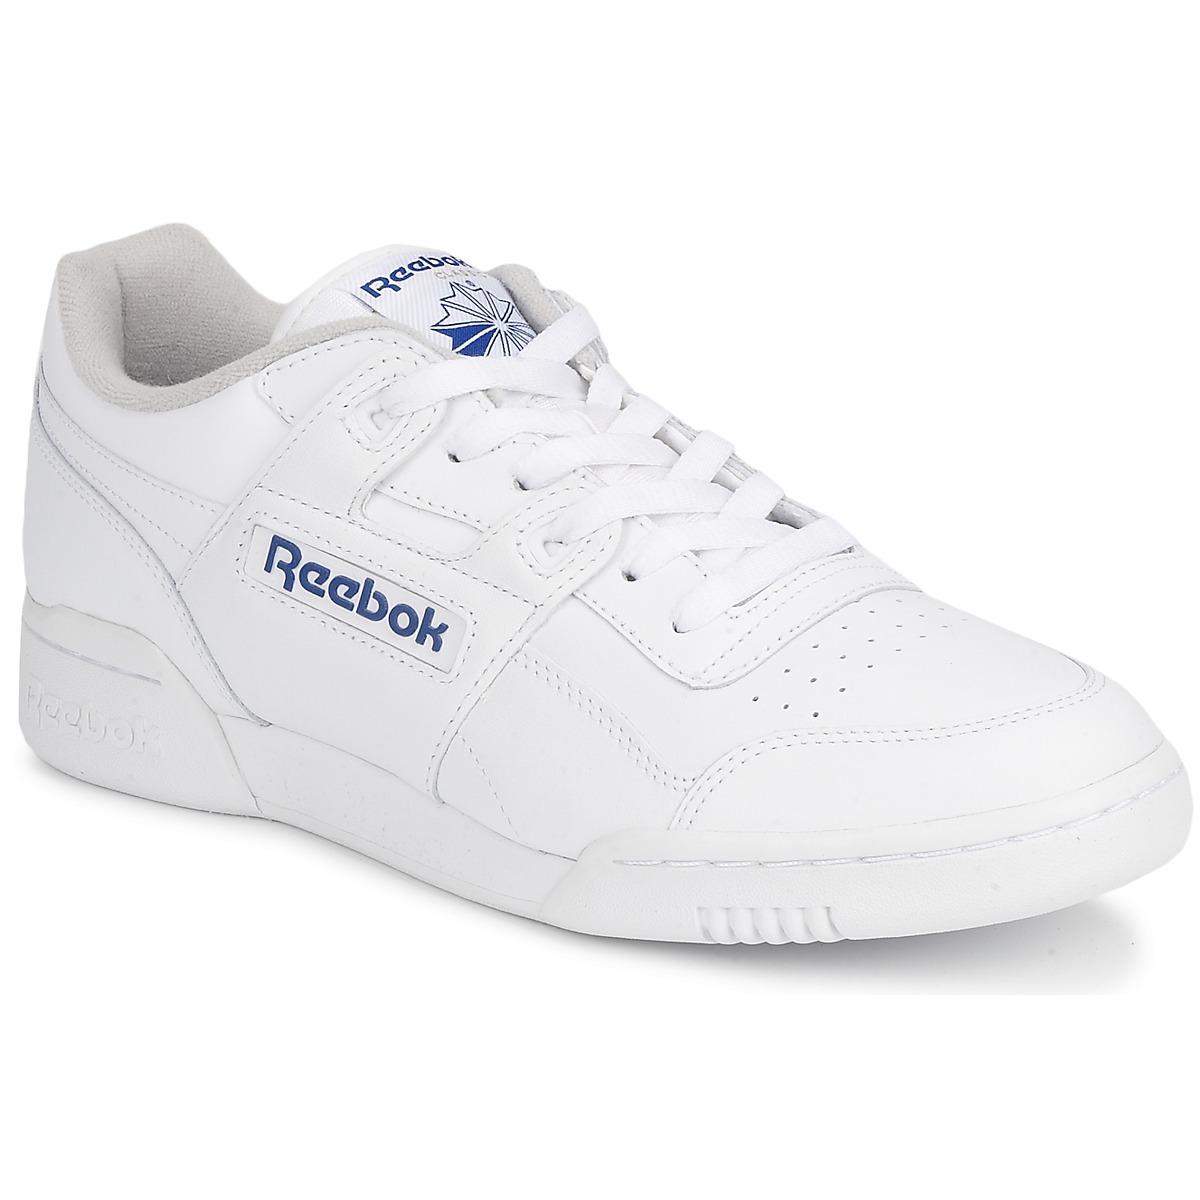 Παπούτσια Χαμηλά Sneakers Reebok Classic WORKOUT PLUS Άσπρο